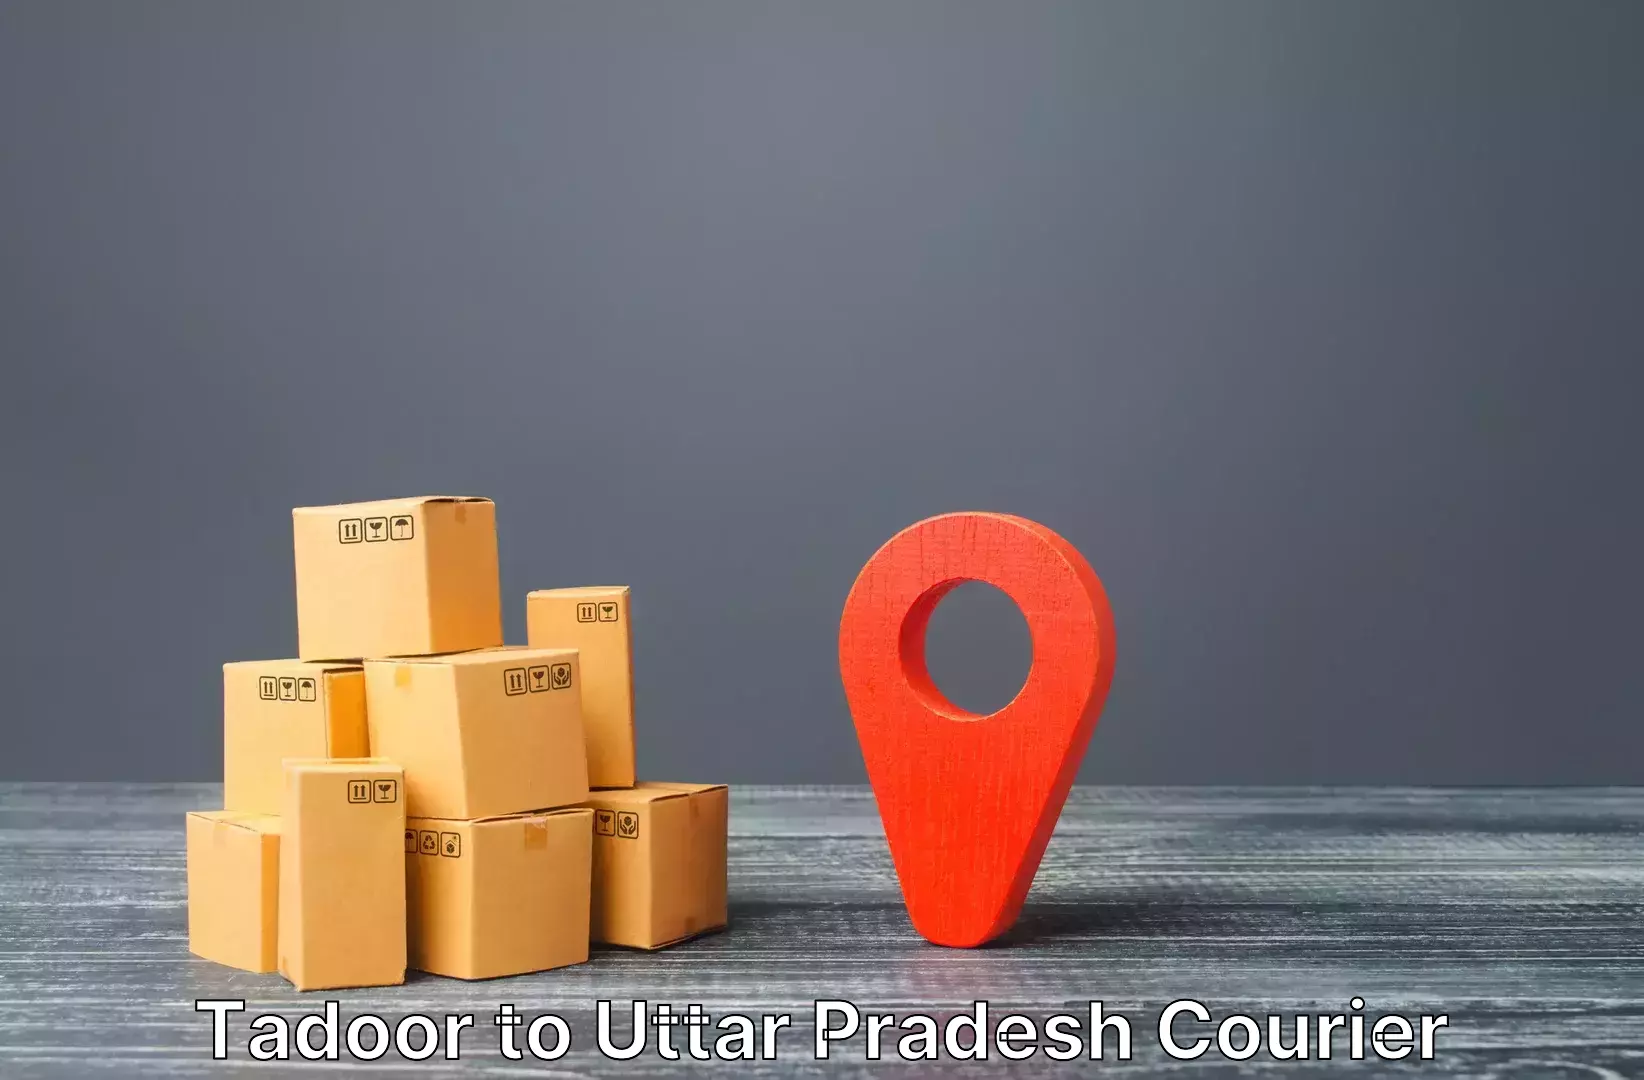 Digital baggage courier Tadoor to Agra